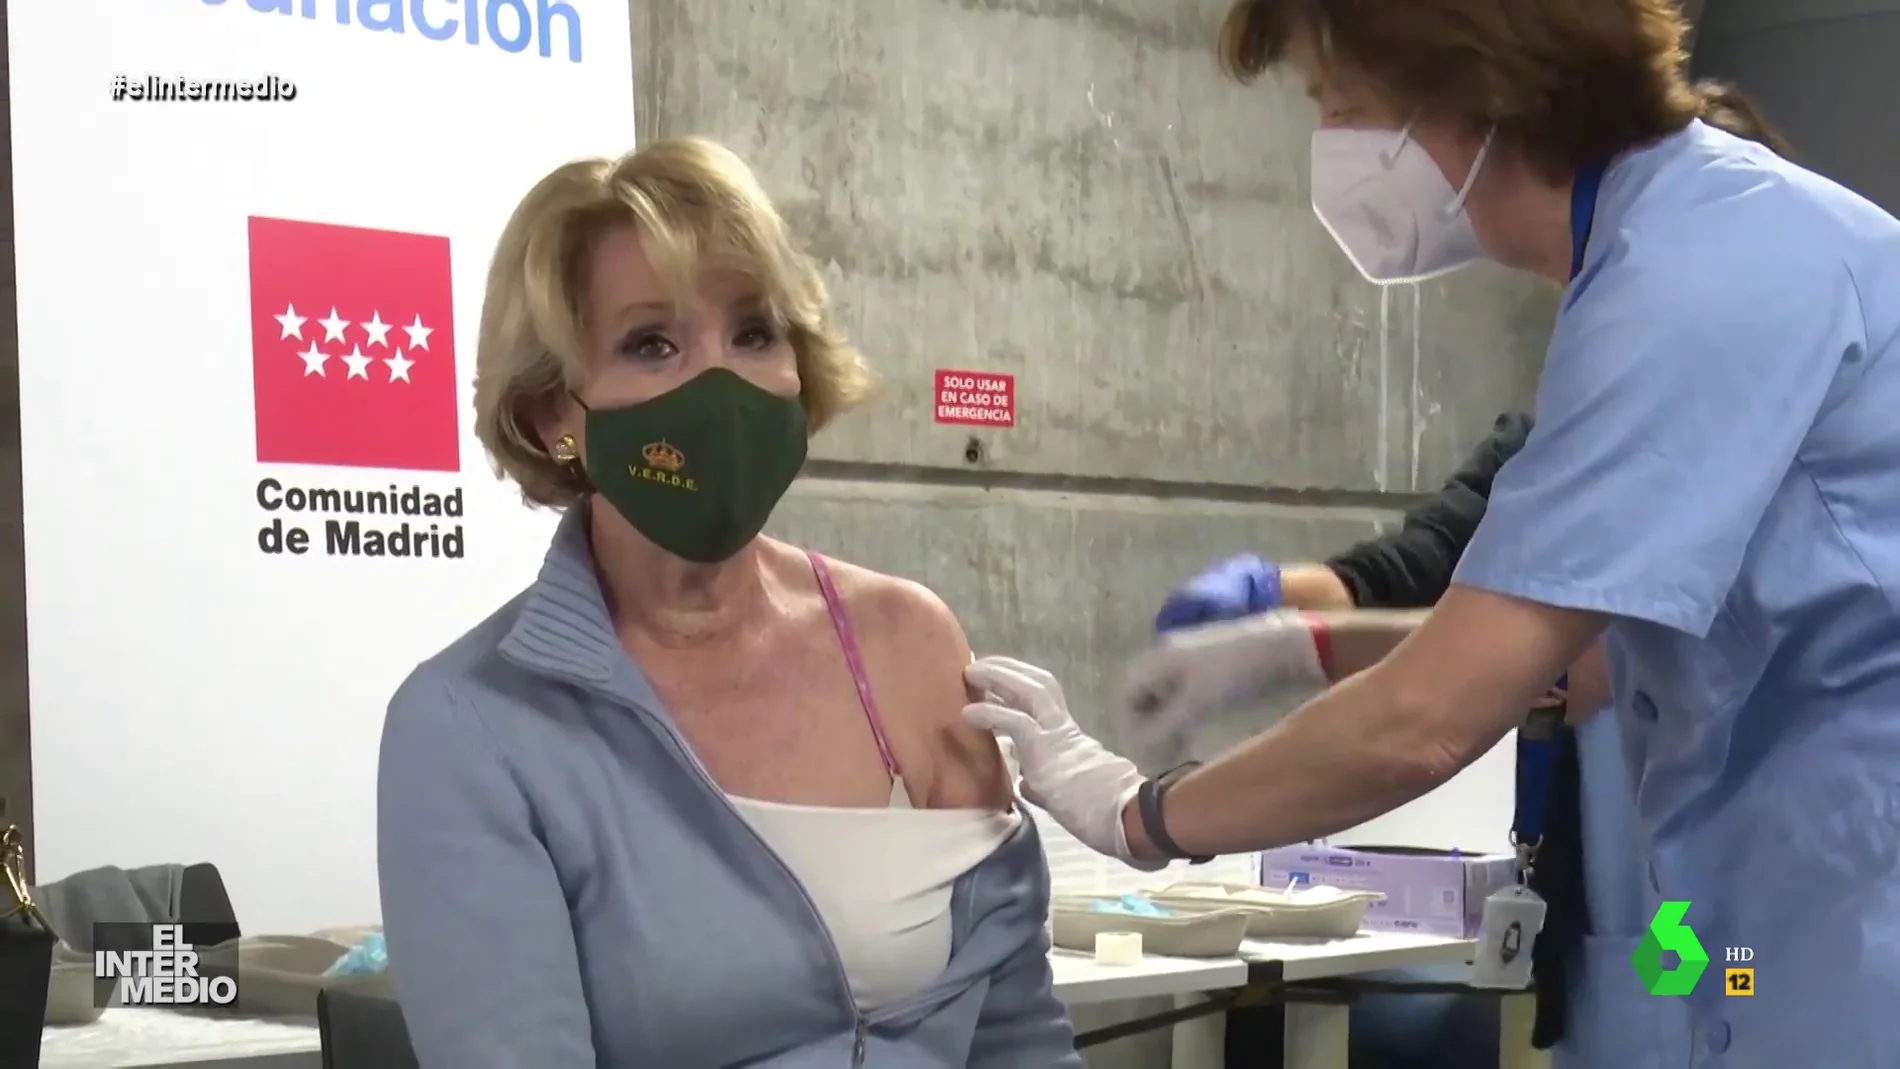 Vídeo manipulado - El grito de dolor de Esperanza Aguirre al ponerse la vacuna: "¡Me quema!"